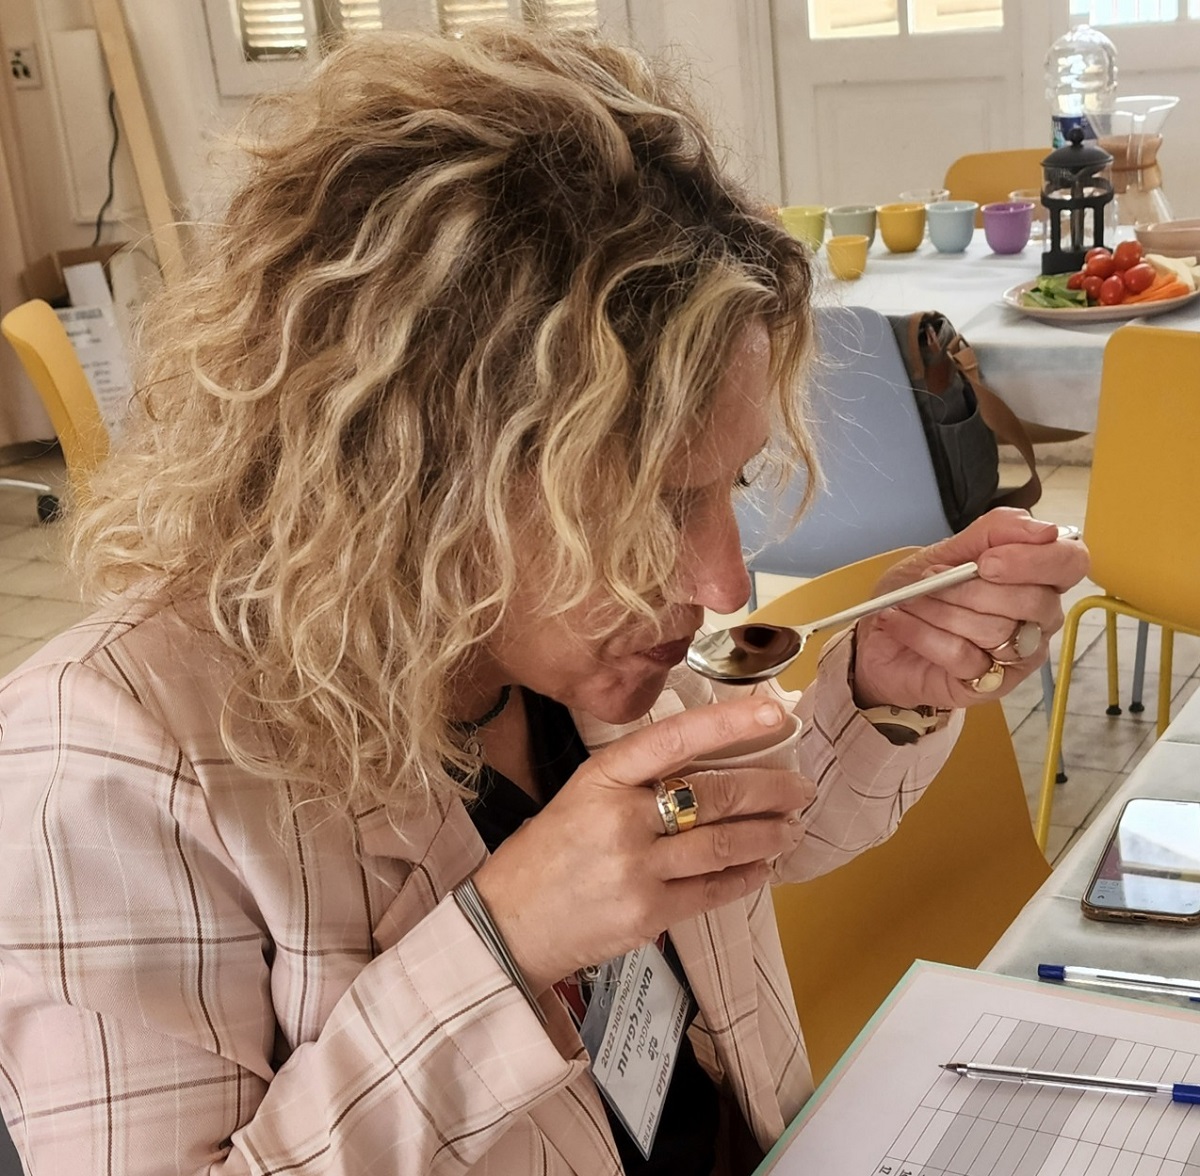 מאיה לפידות טועמת קפה ושופטת בתחרות הקפה הטוב 2022. צילום: ישראל פרקר